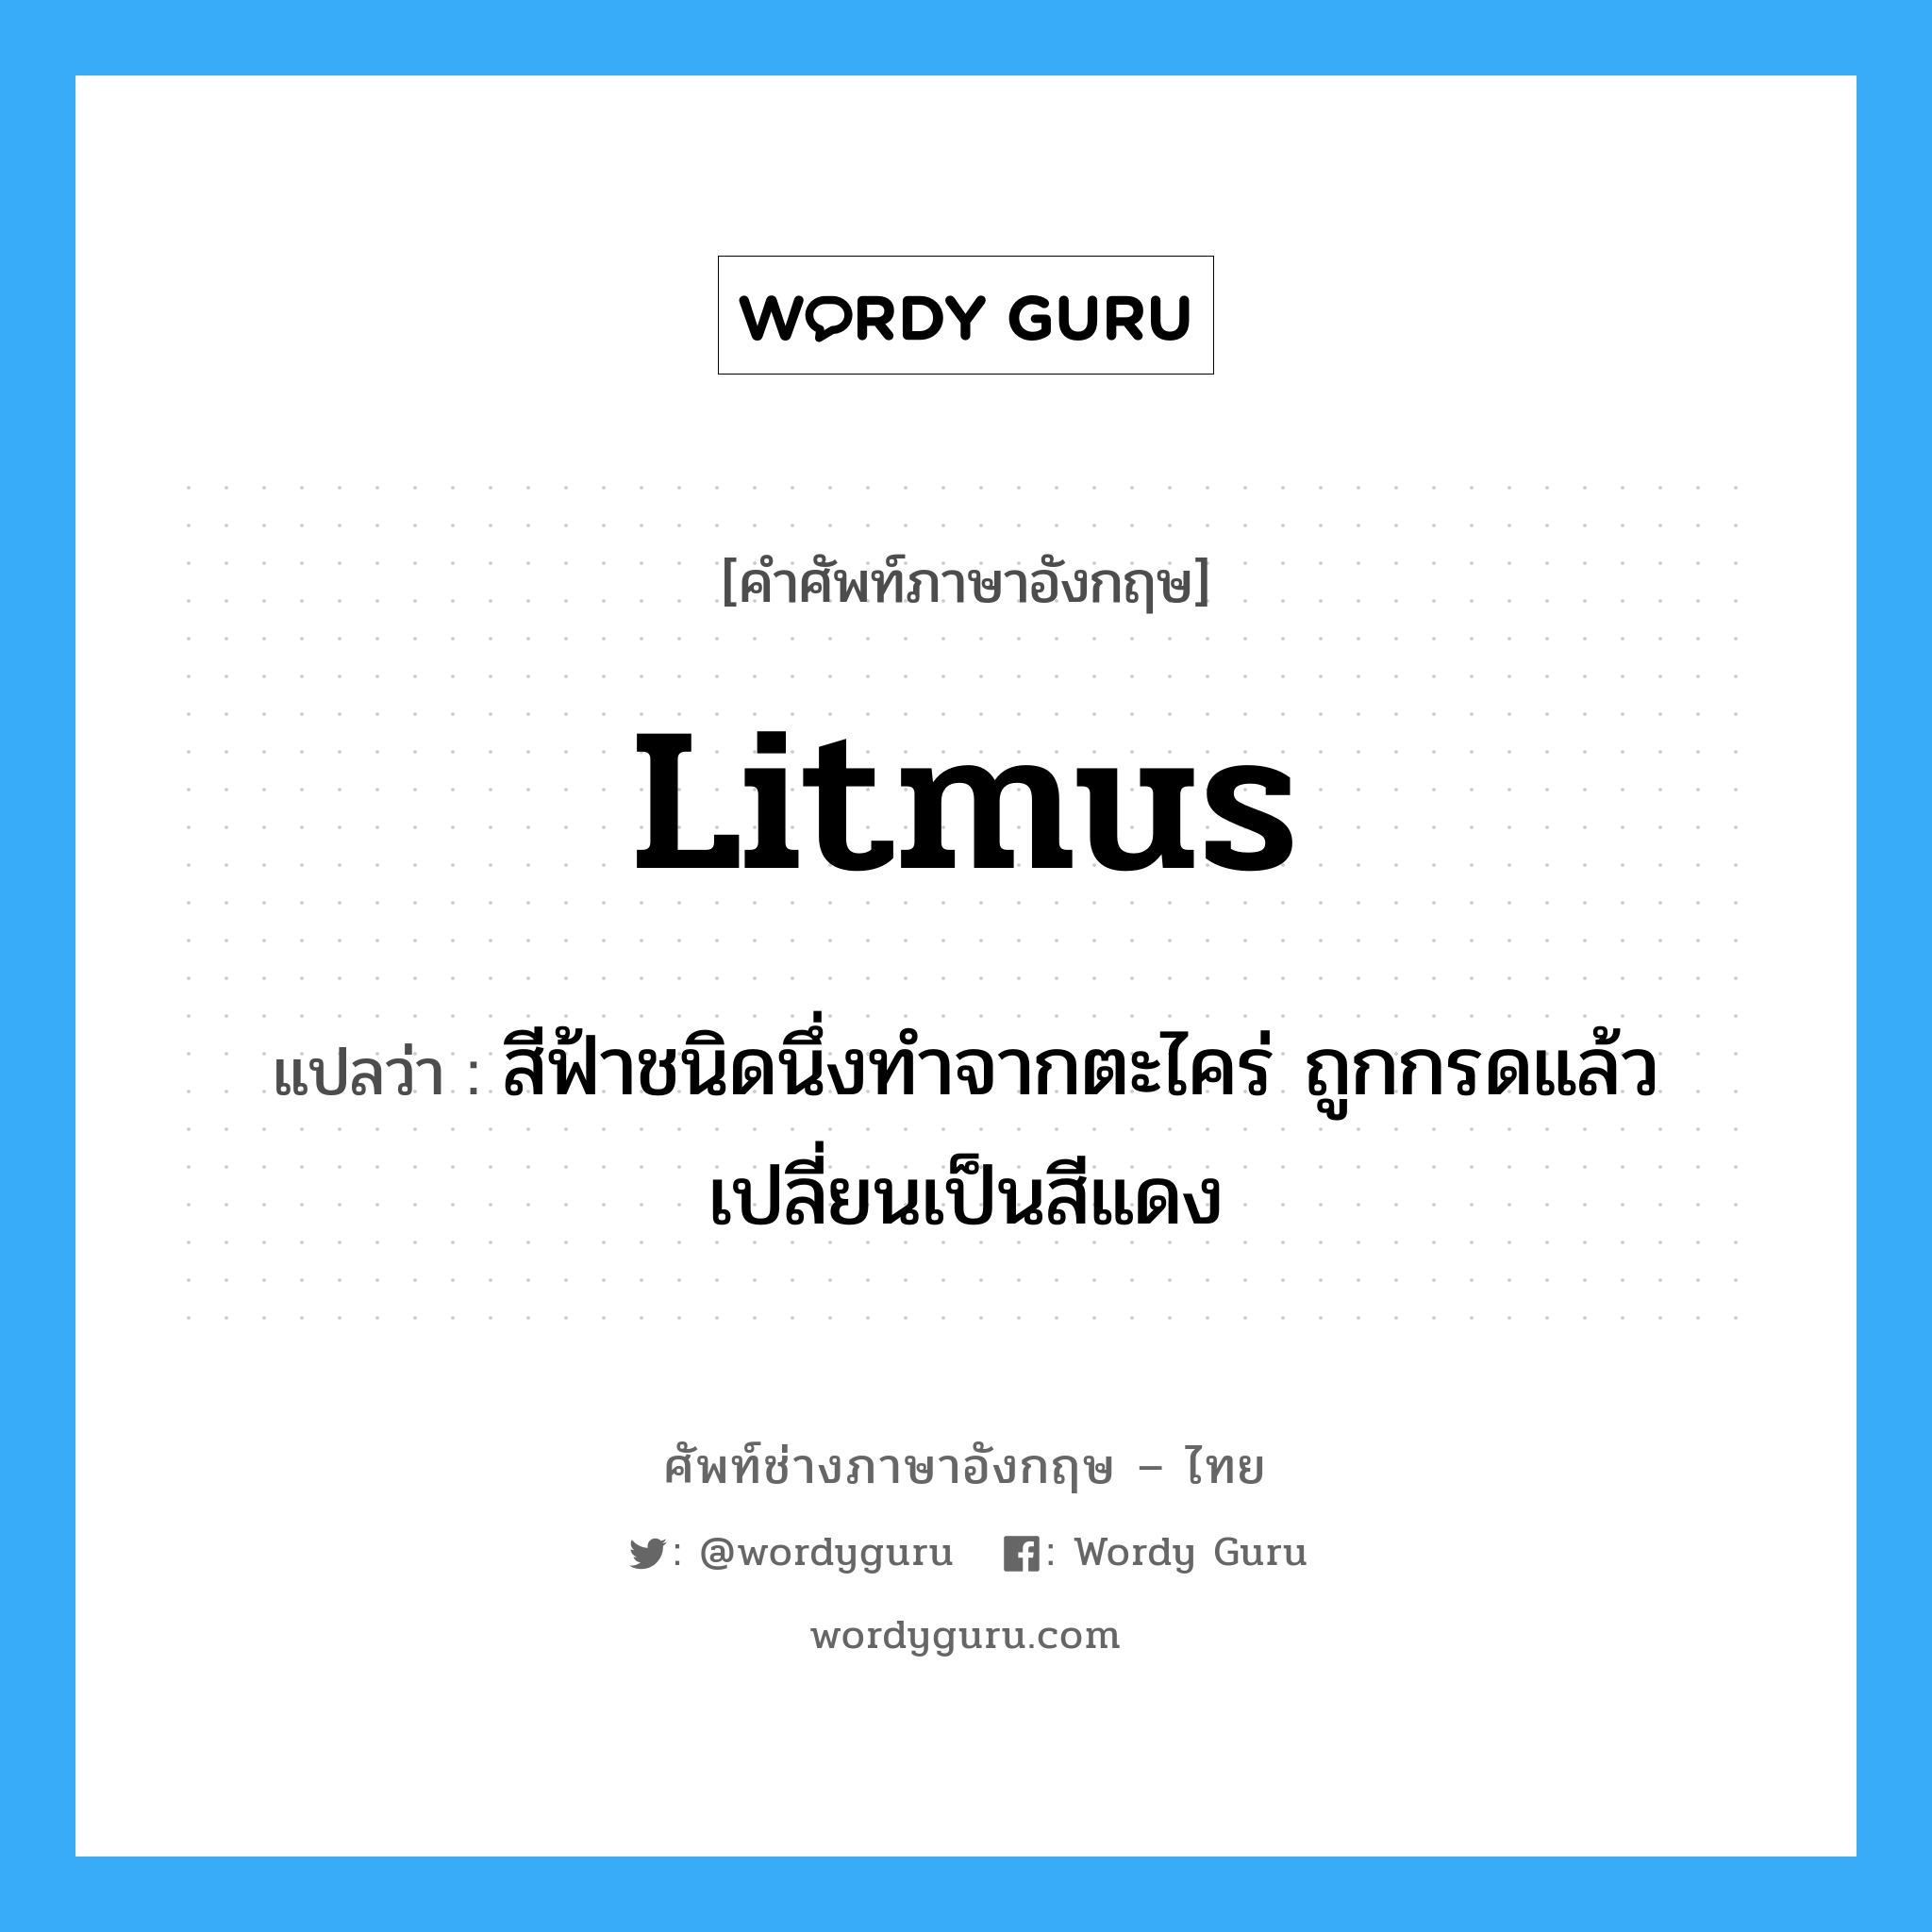 litmus แปลว่า?, คำศัพท์ช่างภาษาอังกฤษ - ไทย litmus คำศัพท์ภาษาอังกฤษ litmus แปลว่า สีฟ้าชนิดนึ่งทำจากตะไคร่ ถูกกรดแล้วเปลี่ยนเป็นสีแดง